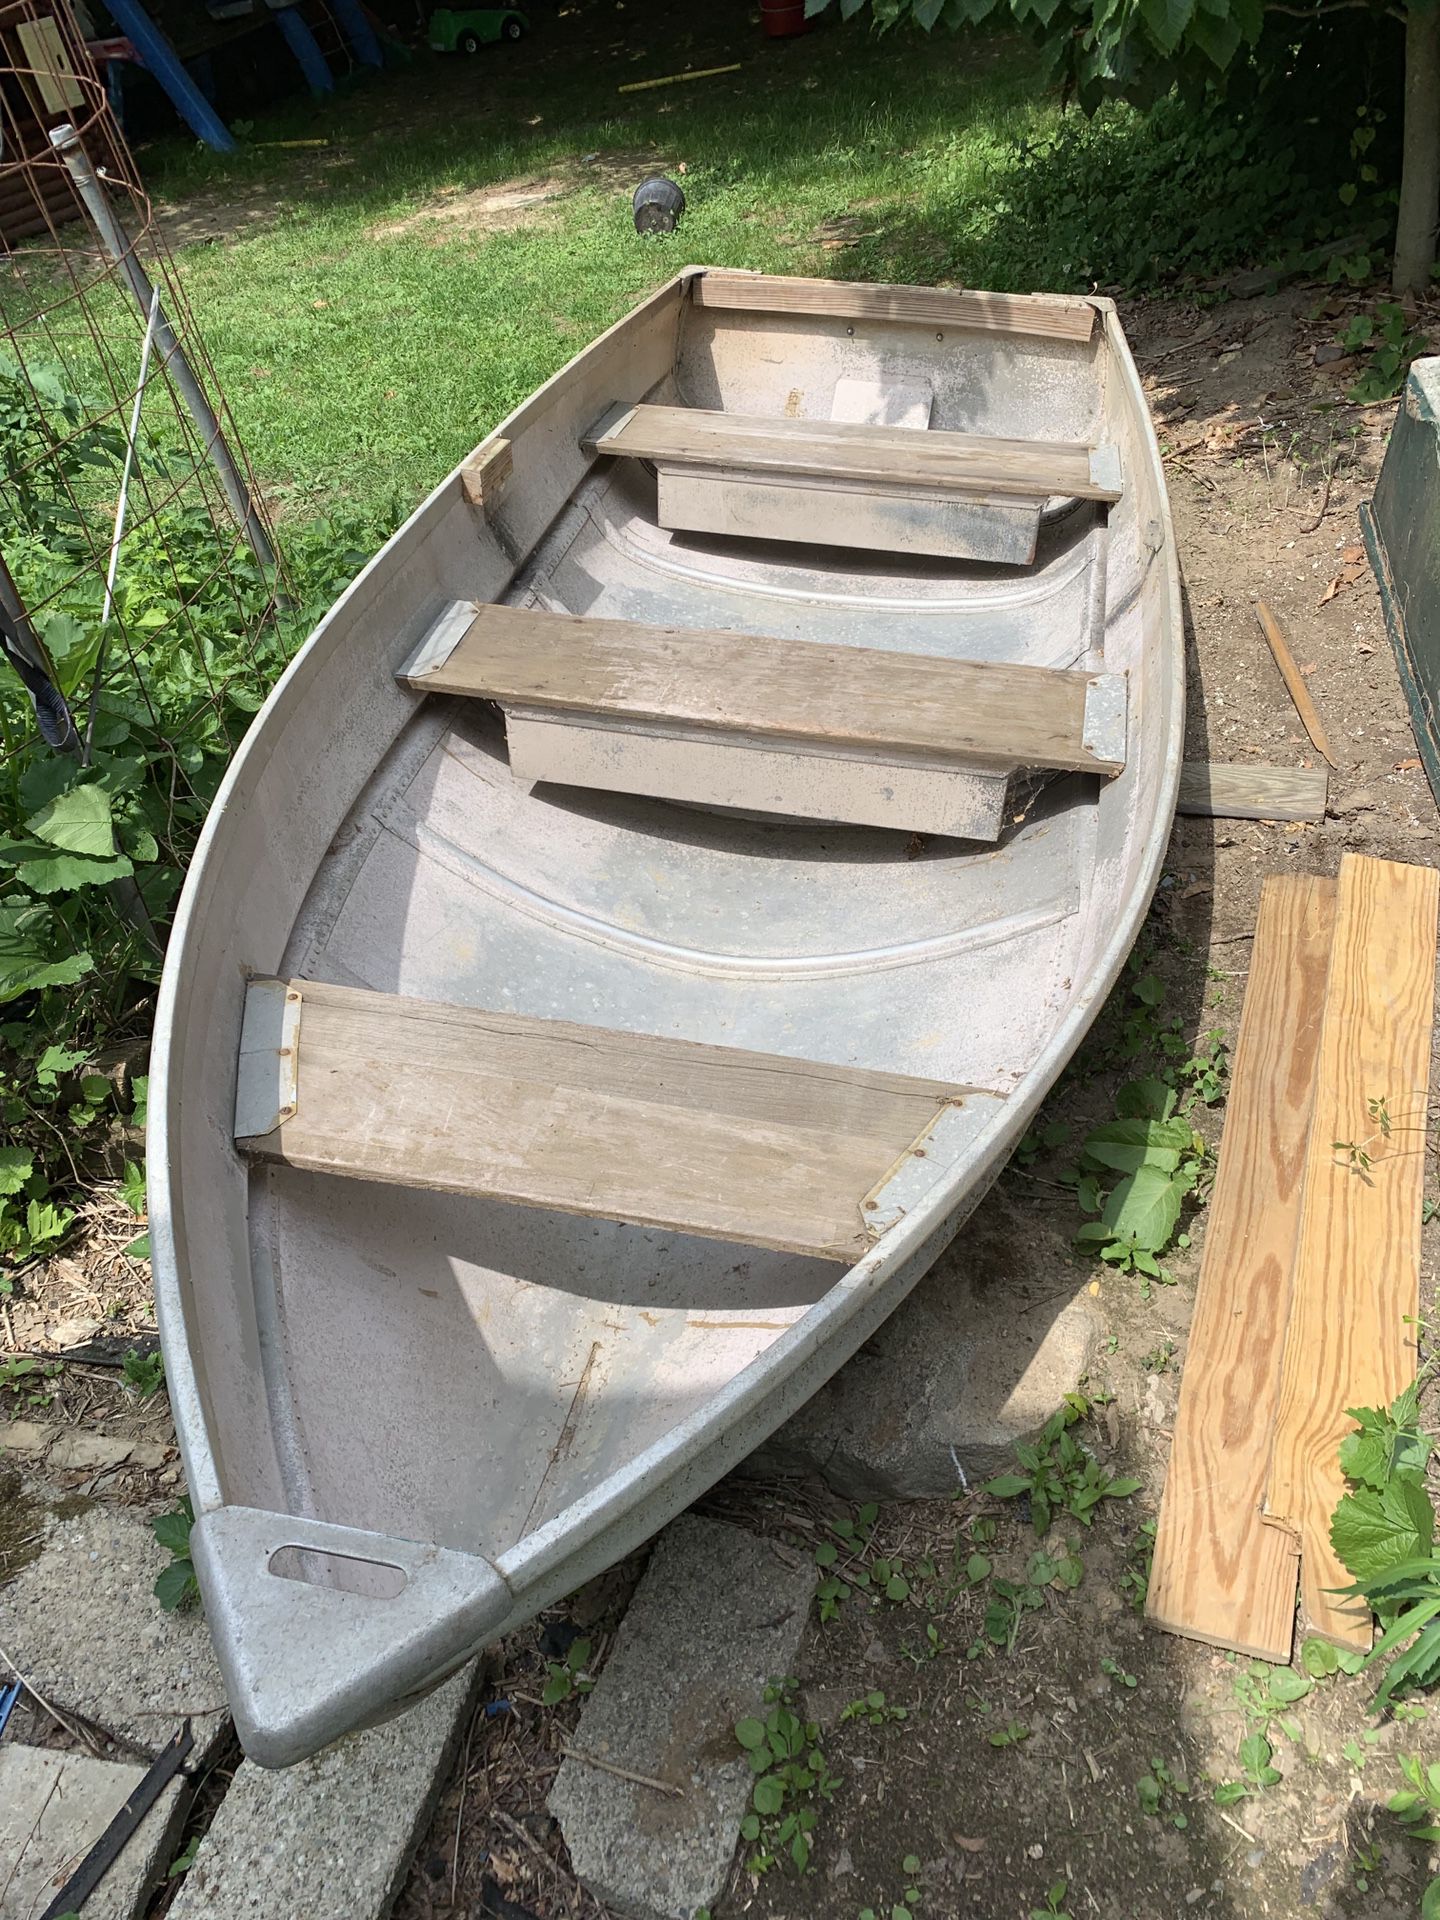 Aluminum row boat